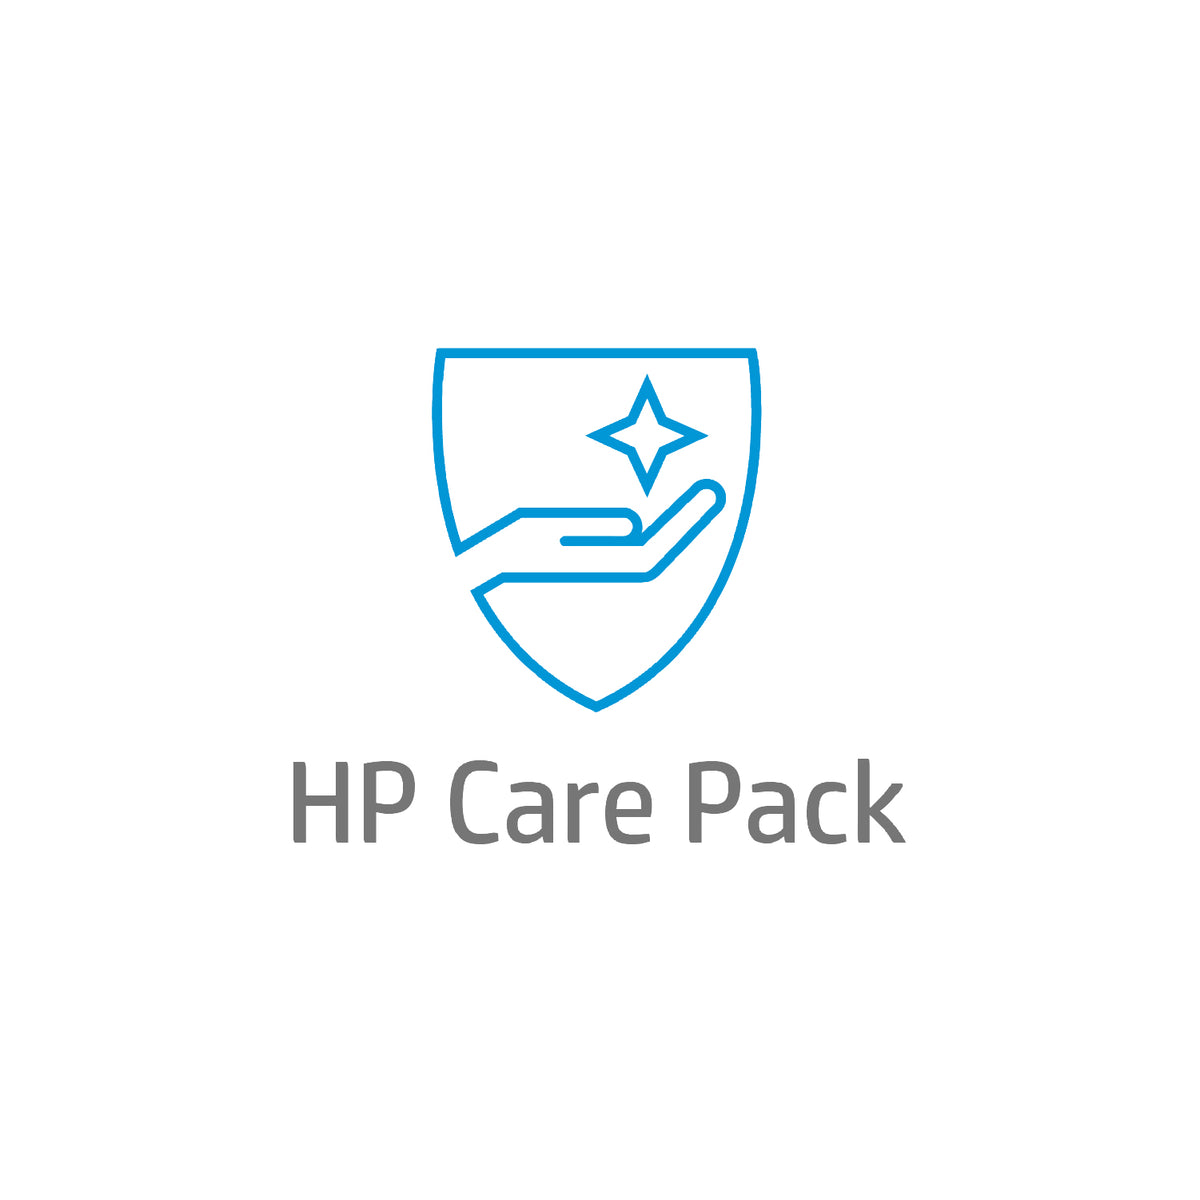 Electronic HP Care Pack Next Business Day Hardware Support with Defective Media Retention and Maintenance Kit Replacement Service Post Warranty - Contrato extendido de serviço - peças e mão de obra (para 2 rolos) - 1 ano - no local - 9x5 - resposta e